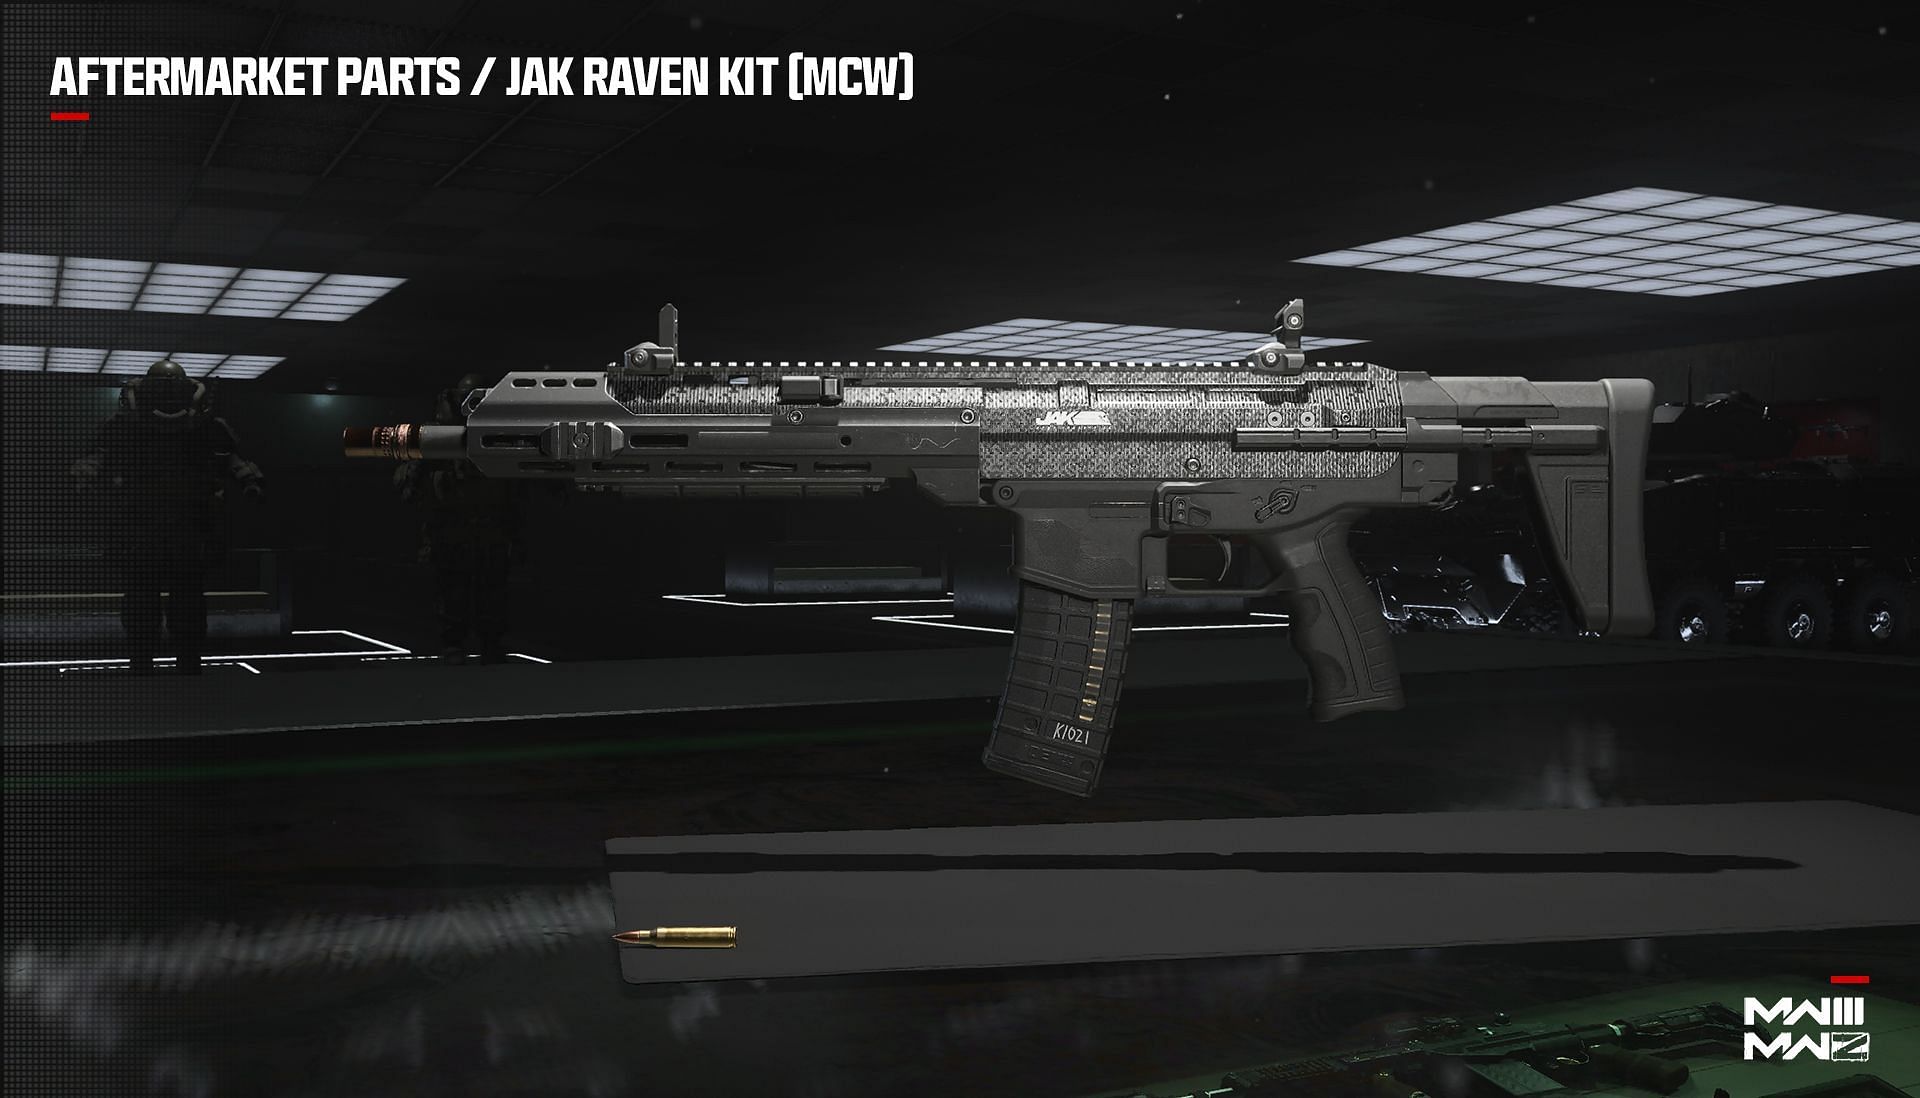 JAK Raven Kit (MCW – AR) aftermarket part (Image via Activision)